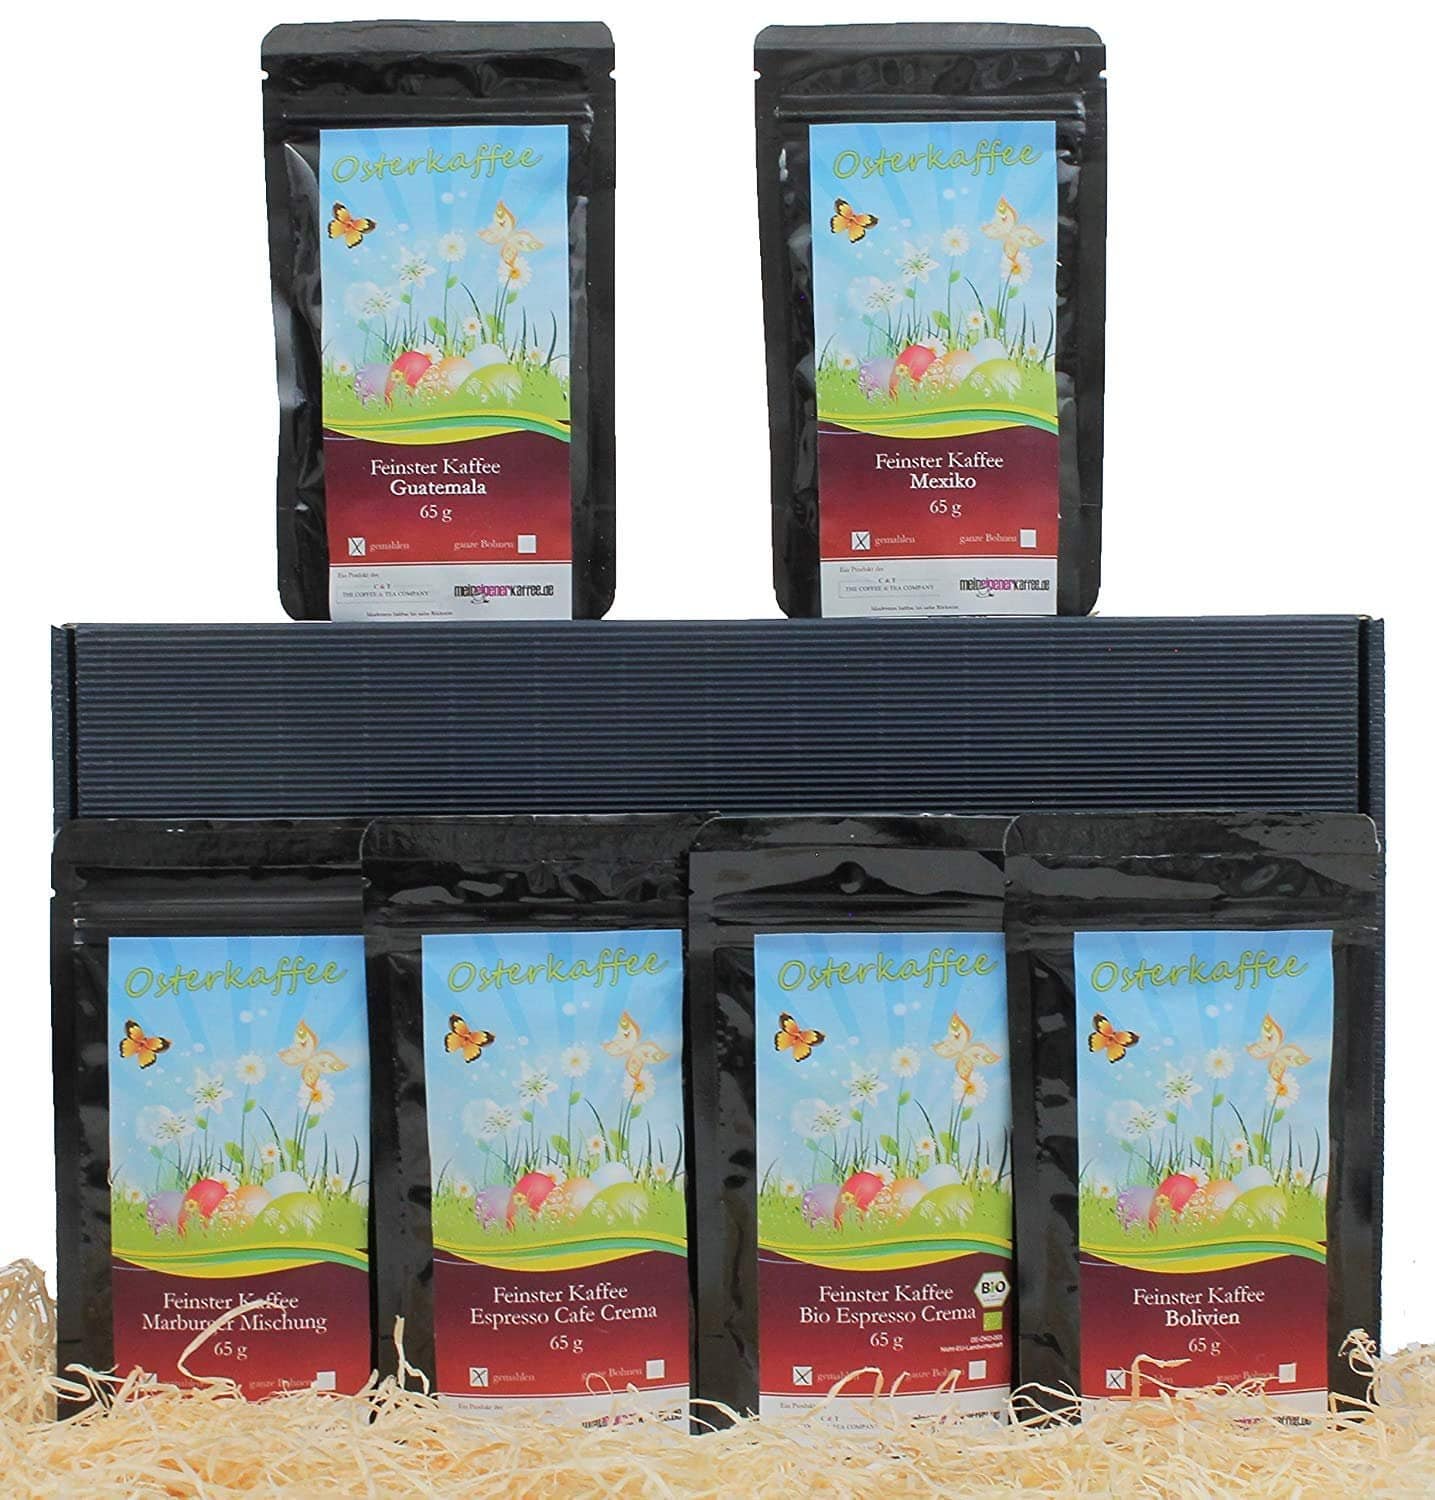 Oster Kaffee-Box mit 6 sagenhaften Kaffees